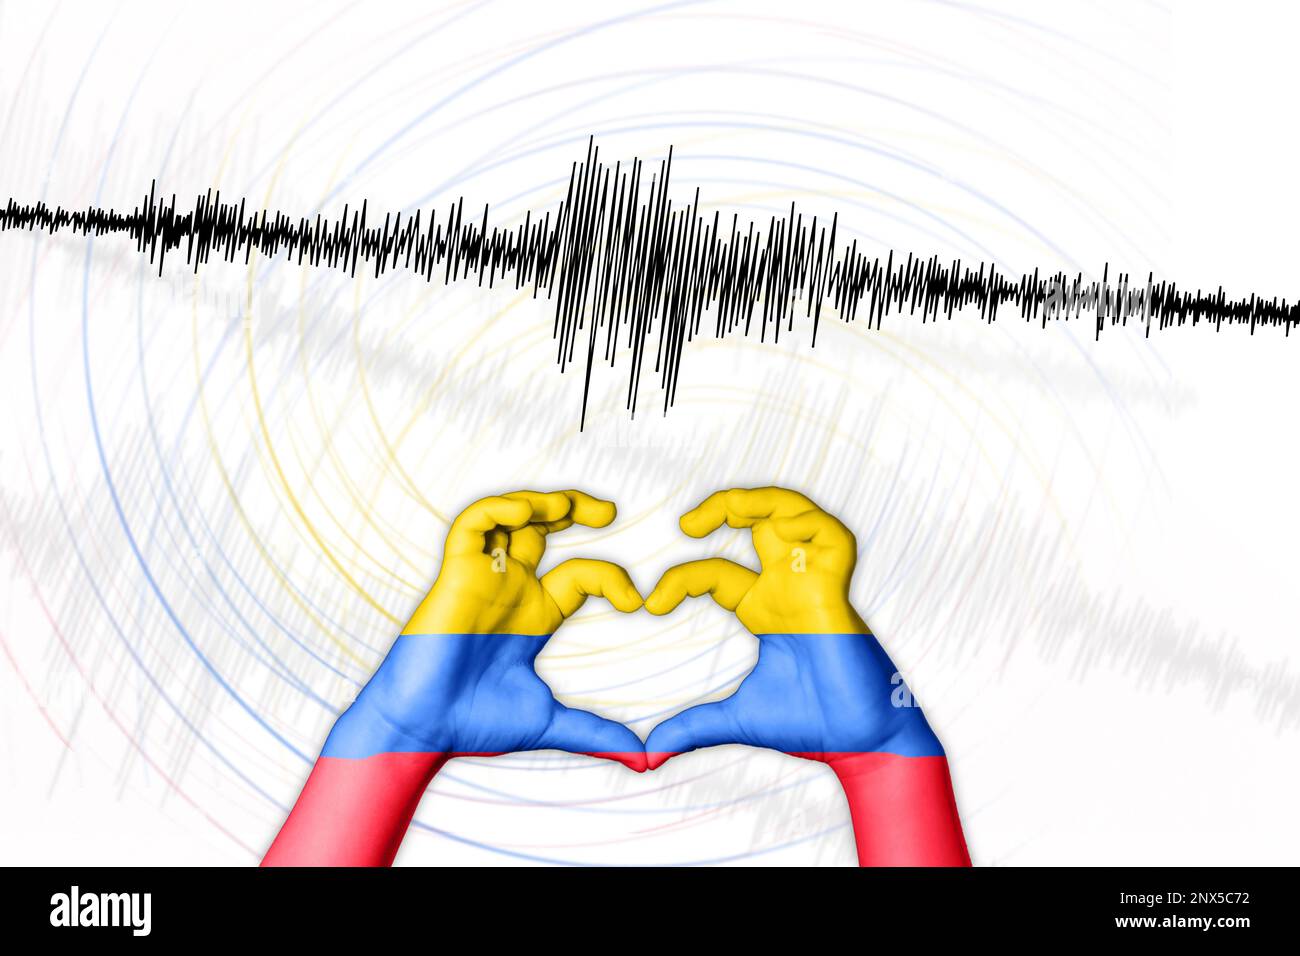 Erdbeben Kolumbiens Symbol der Heart Richter Scale Stockfoto